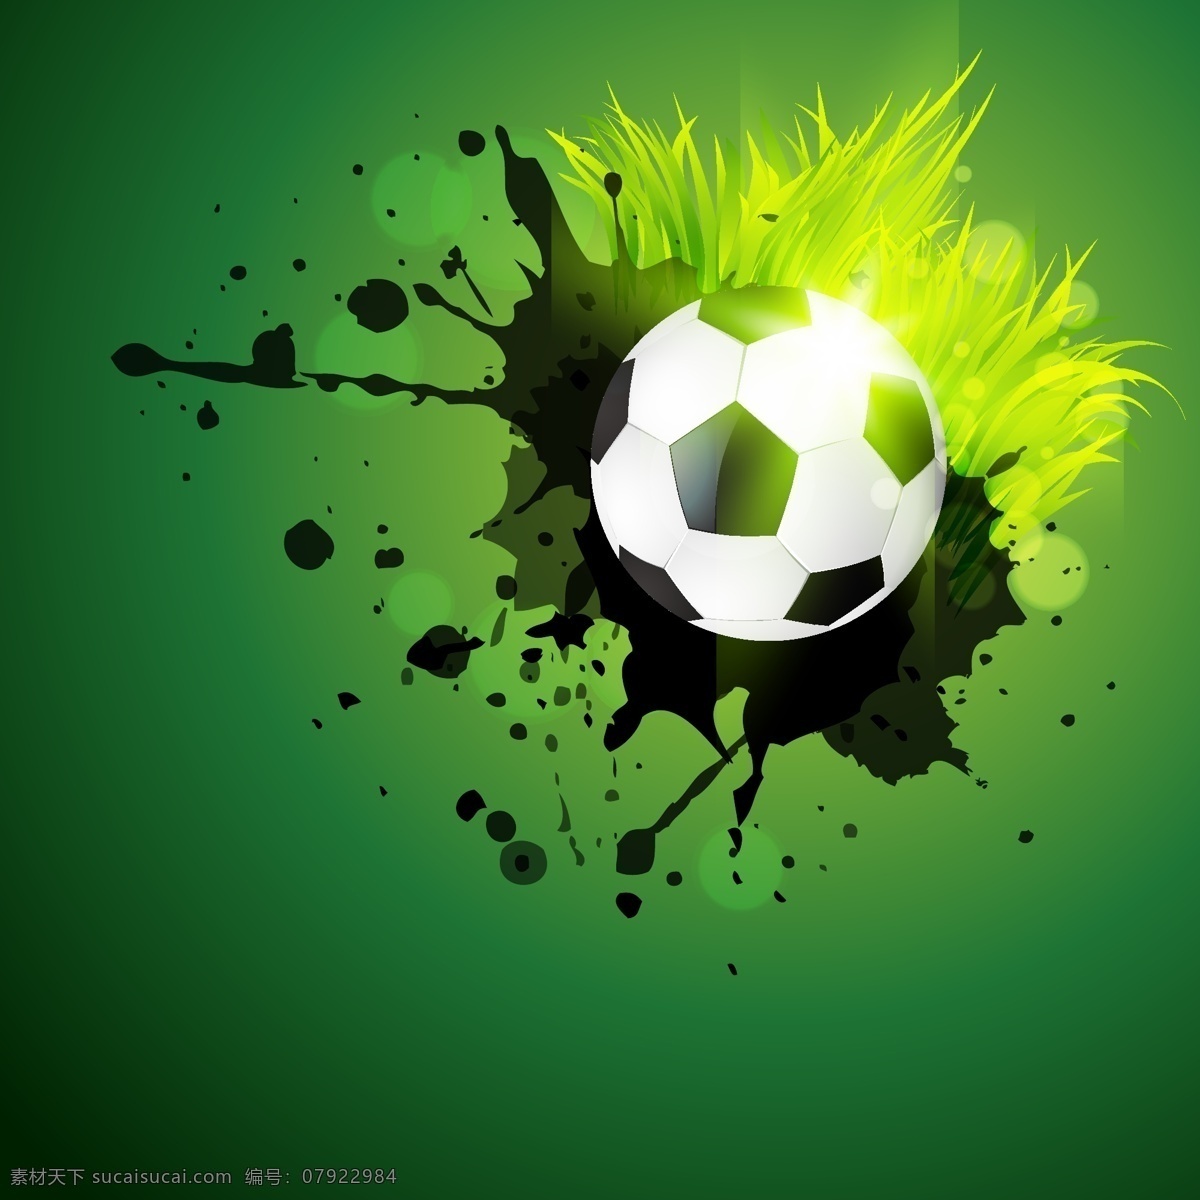 绿色 涂鸦 足球 背景 巴西 海报 生活百科 矢量素材 世界杯 体育运动